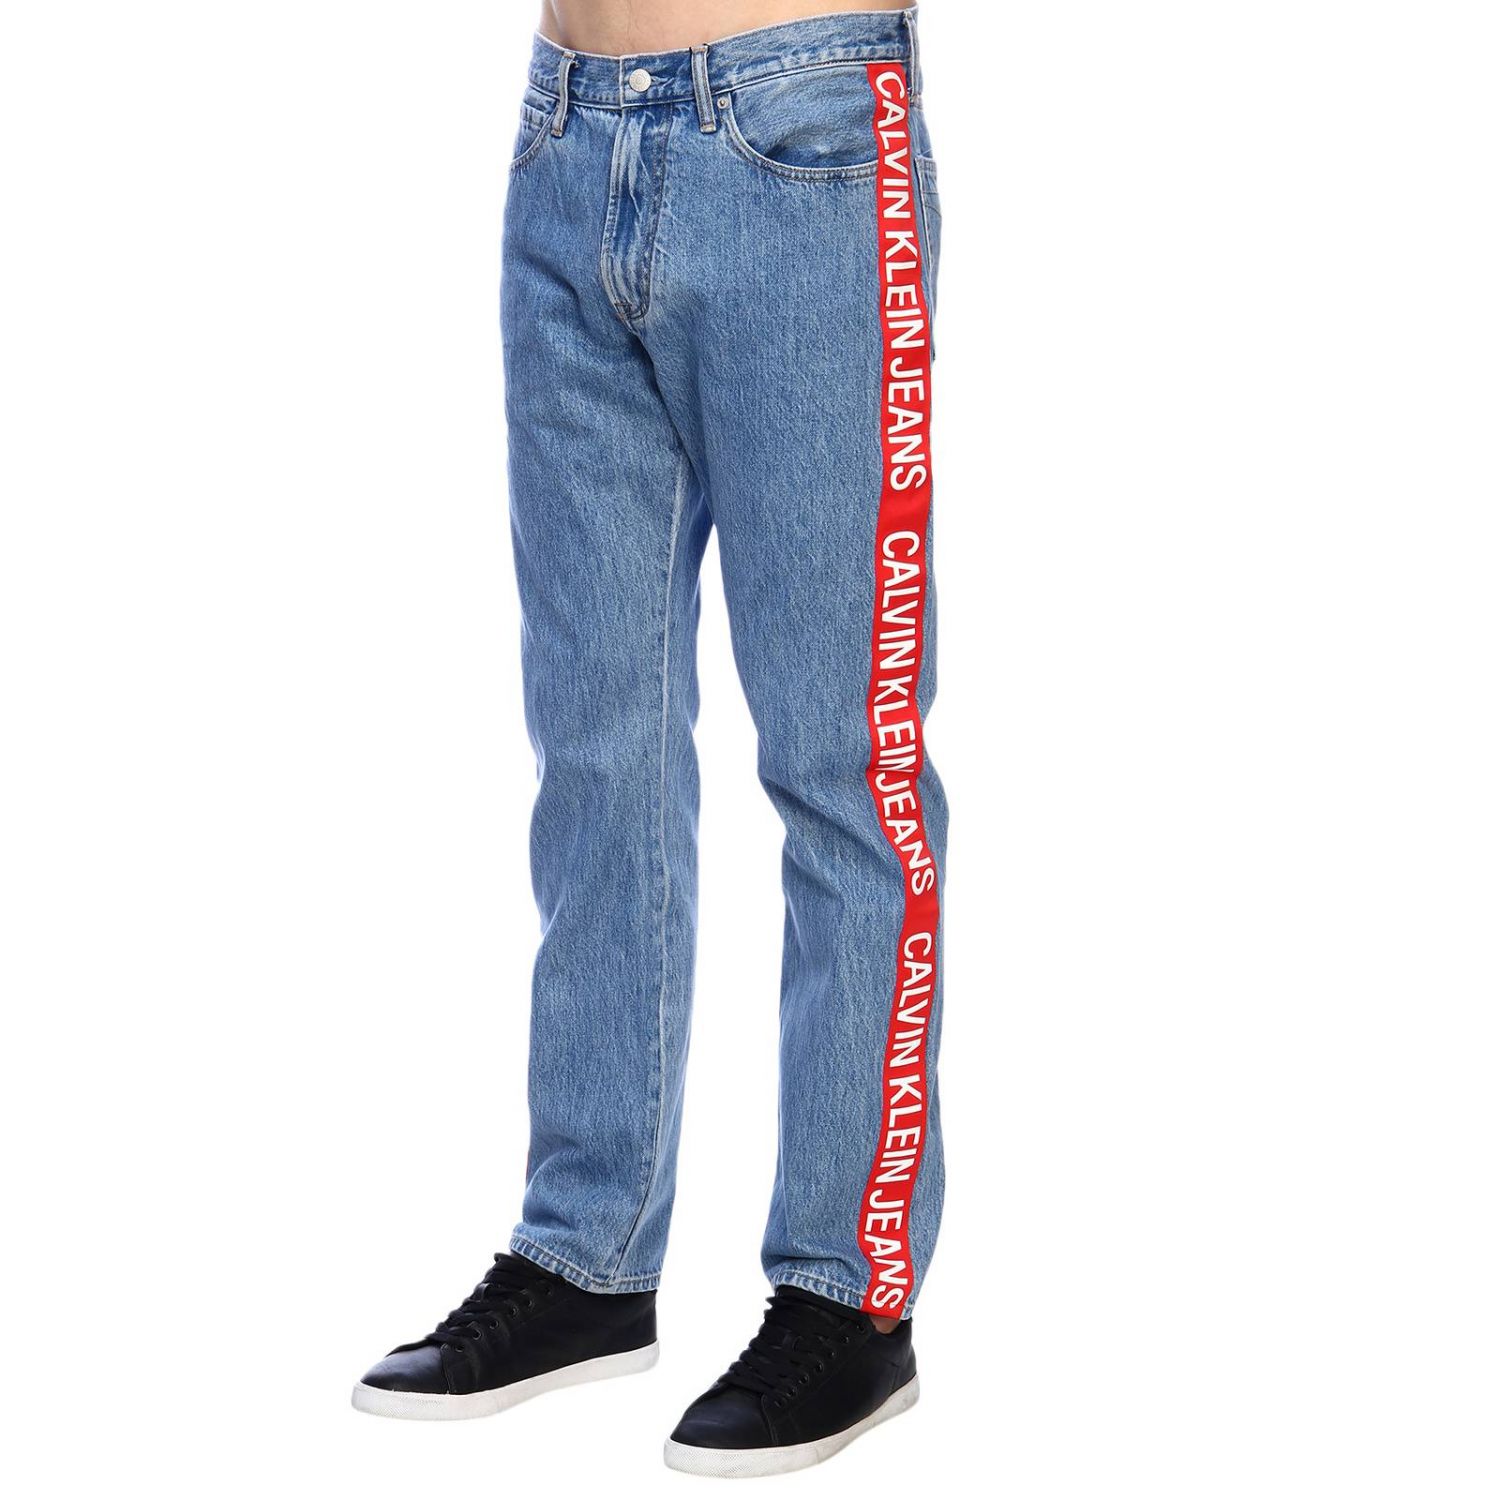 jeans calvin klein